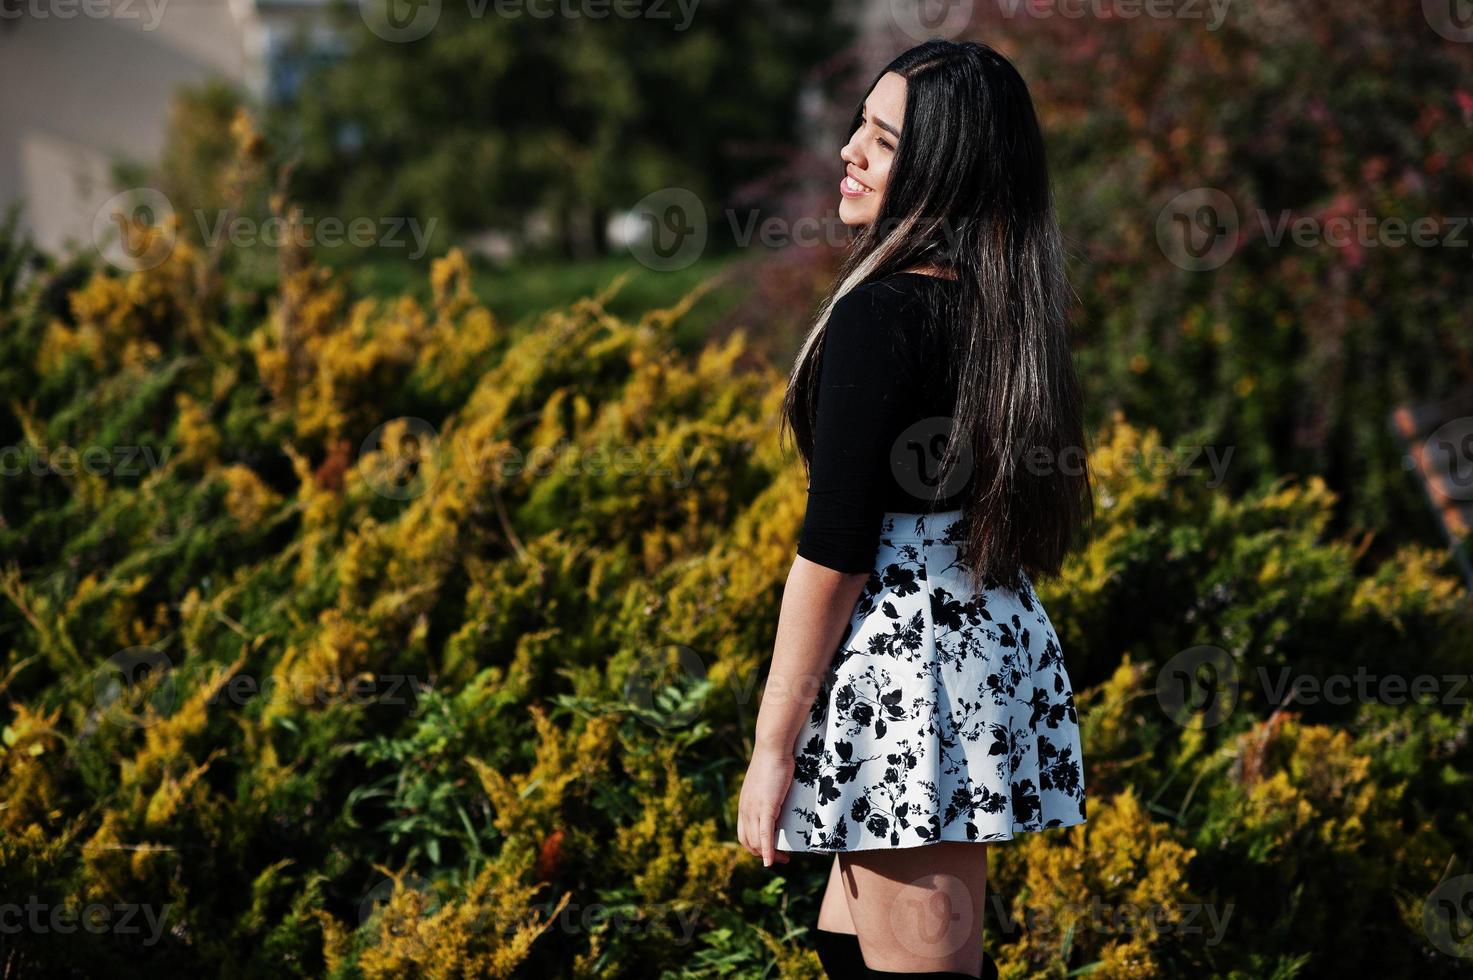 bonita chica modelo latina de ecuador usa tops negros y falda en la calle. foto